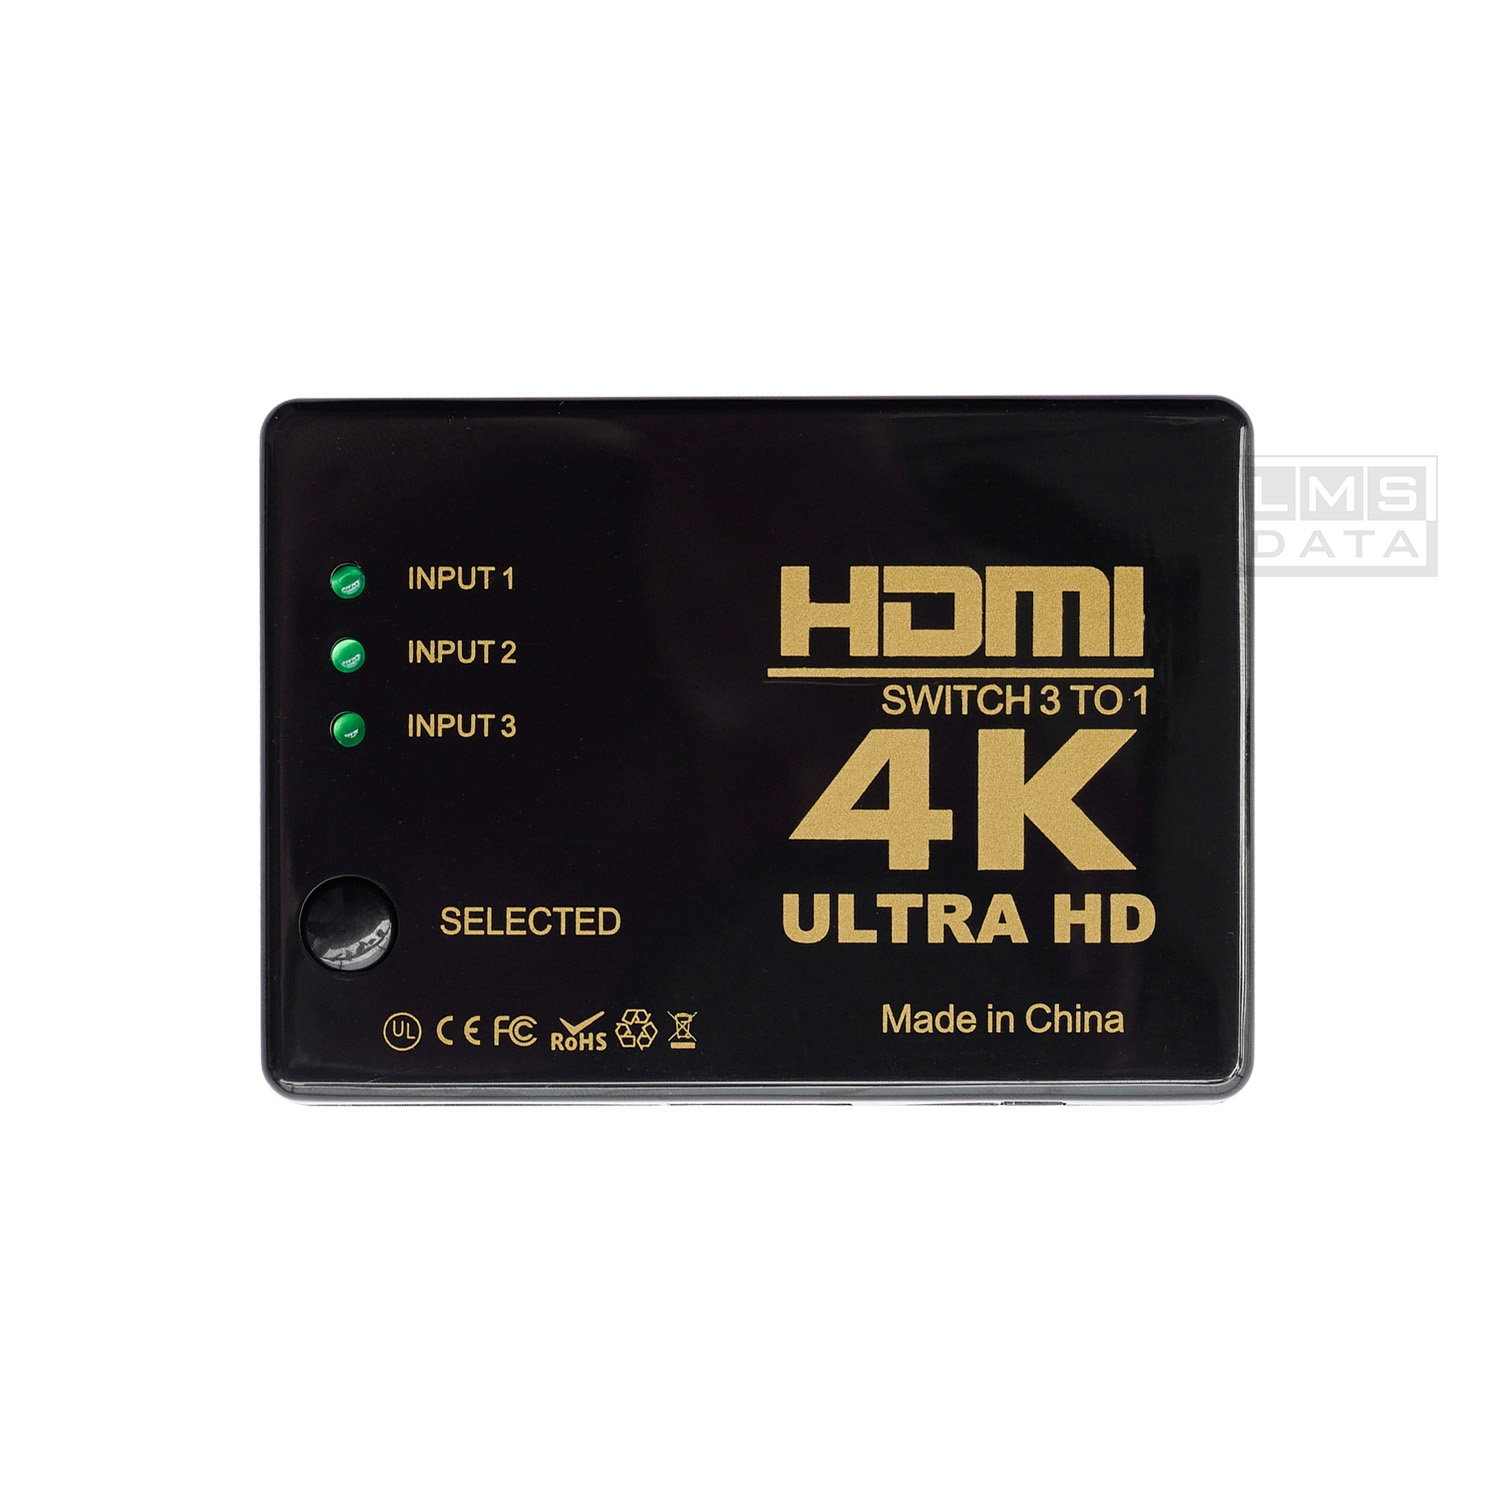 מפצל HDMI לחיבור 3 יציאות HDMI שונות למסך 1 מבית LMS DATA